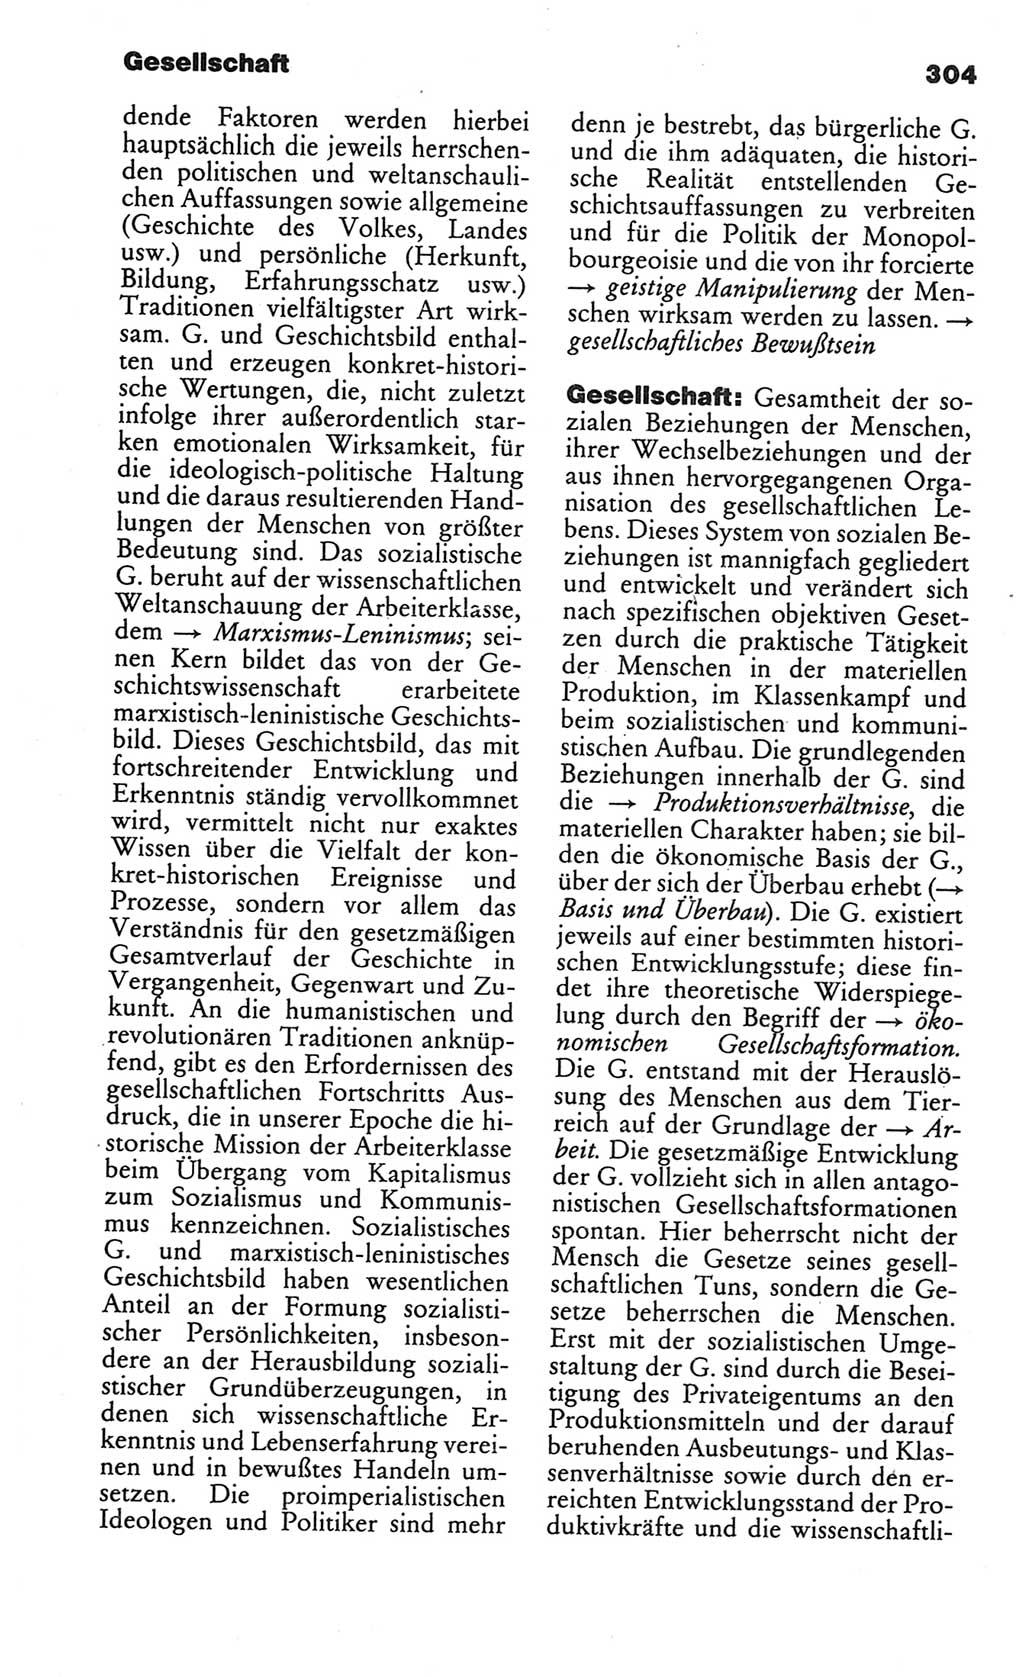 Kleines politisches Wörterbuch [Deutsche Demokratische Republik (DDR)] 1986, Seite 304 (Kl. pol. Wb. DDR 1986, S. 304)